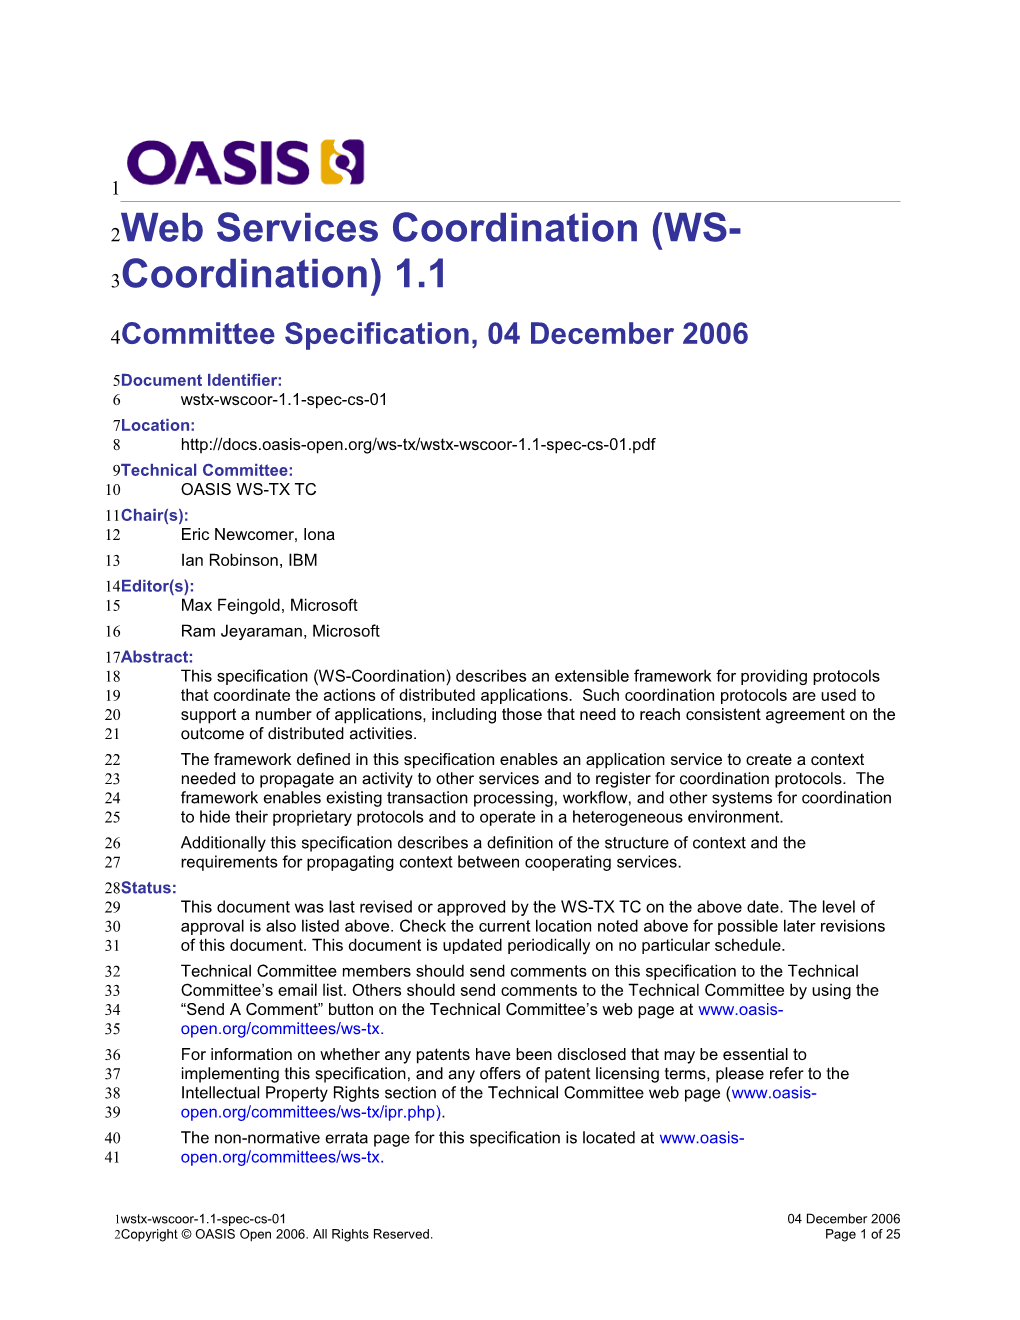 Web Services Coordination(WS-Coordination) 1.1